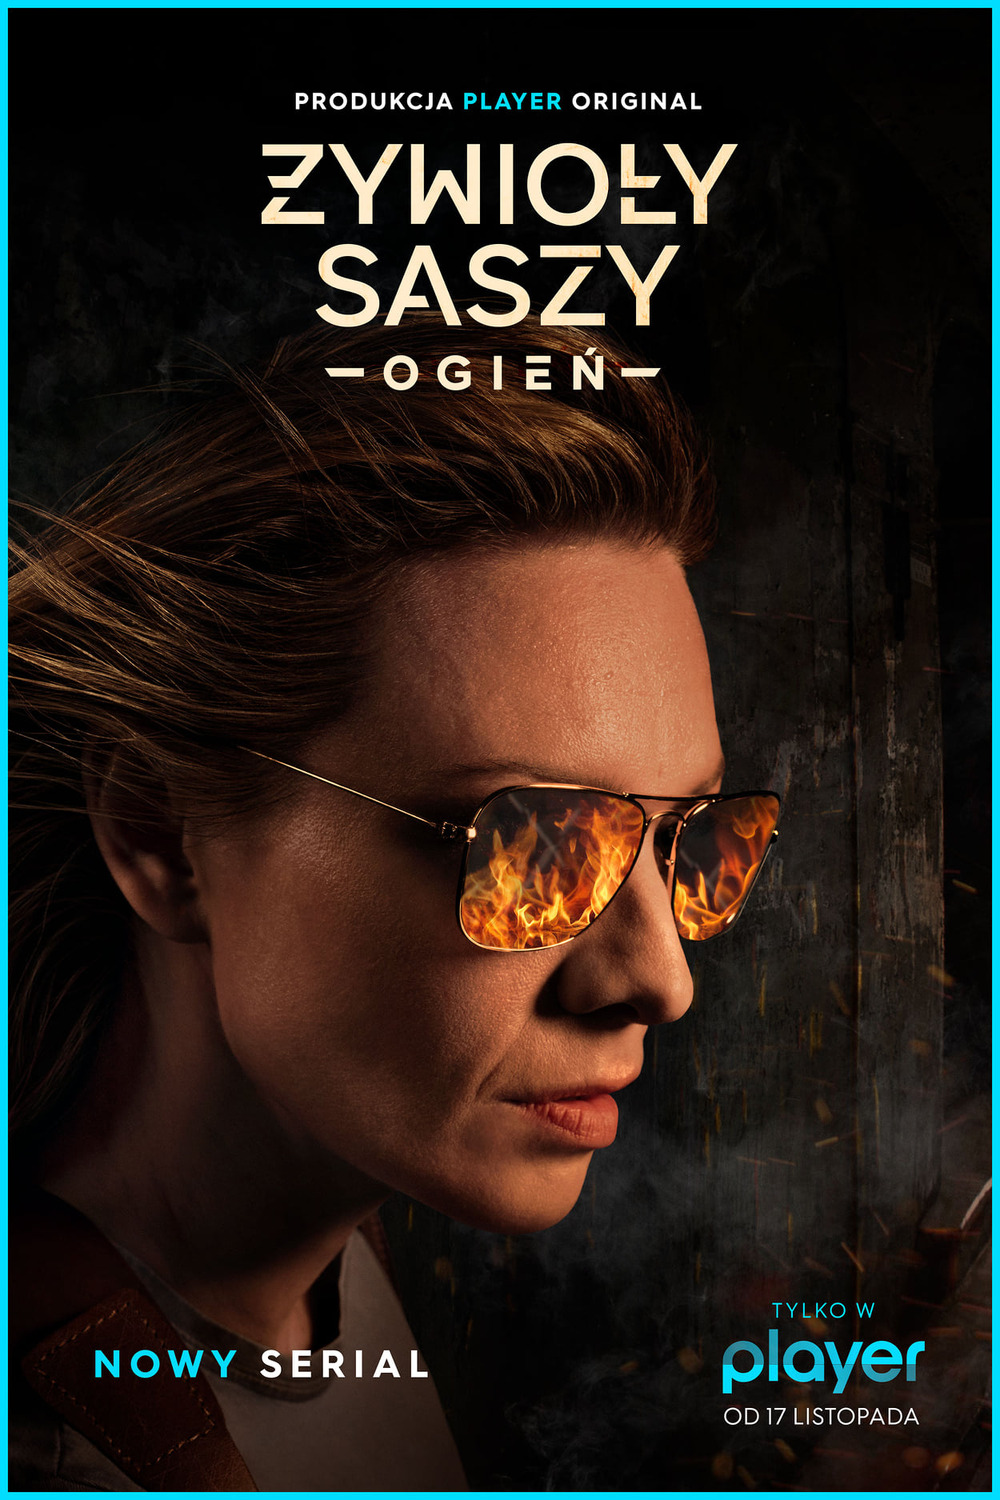 Extra Large TV Poster Image for Zywioly Saszy - Ogien 